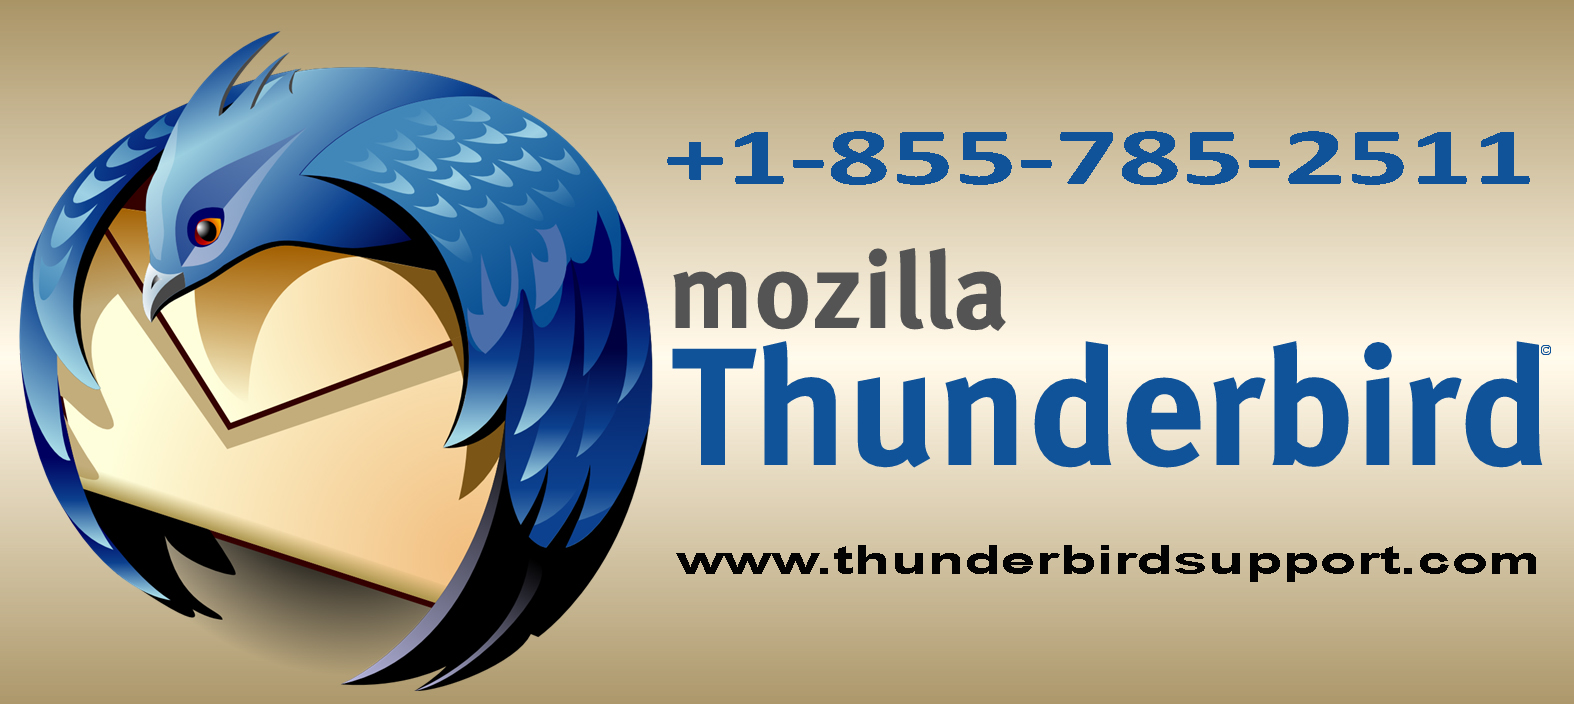 mozilla thunderbird email alias